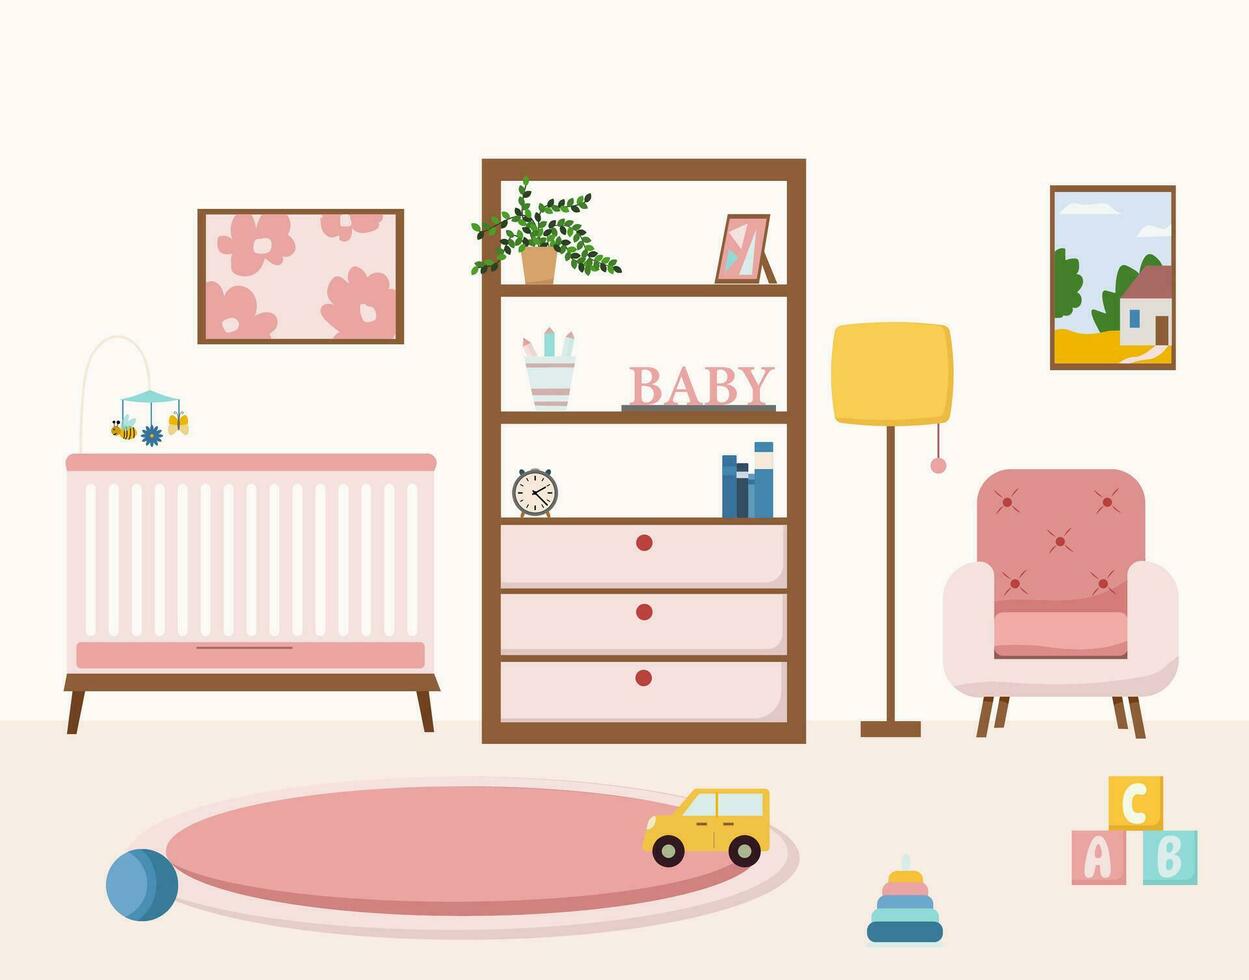 knus kinderkamer interieur met meubilair zo net zo wieg, fauteuil, speelgoed, tapijt in modern stijl vlak vector illustratie.